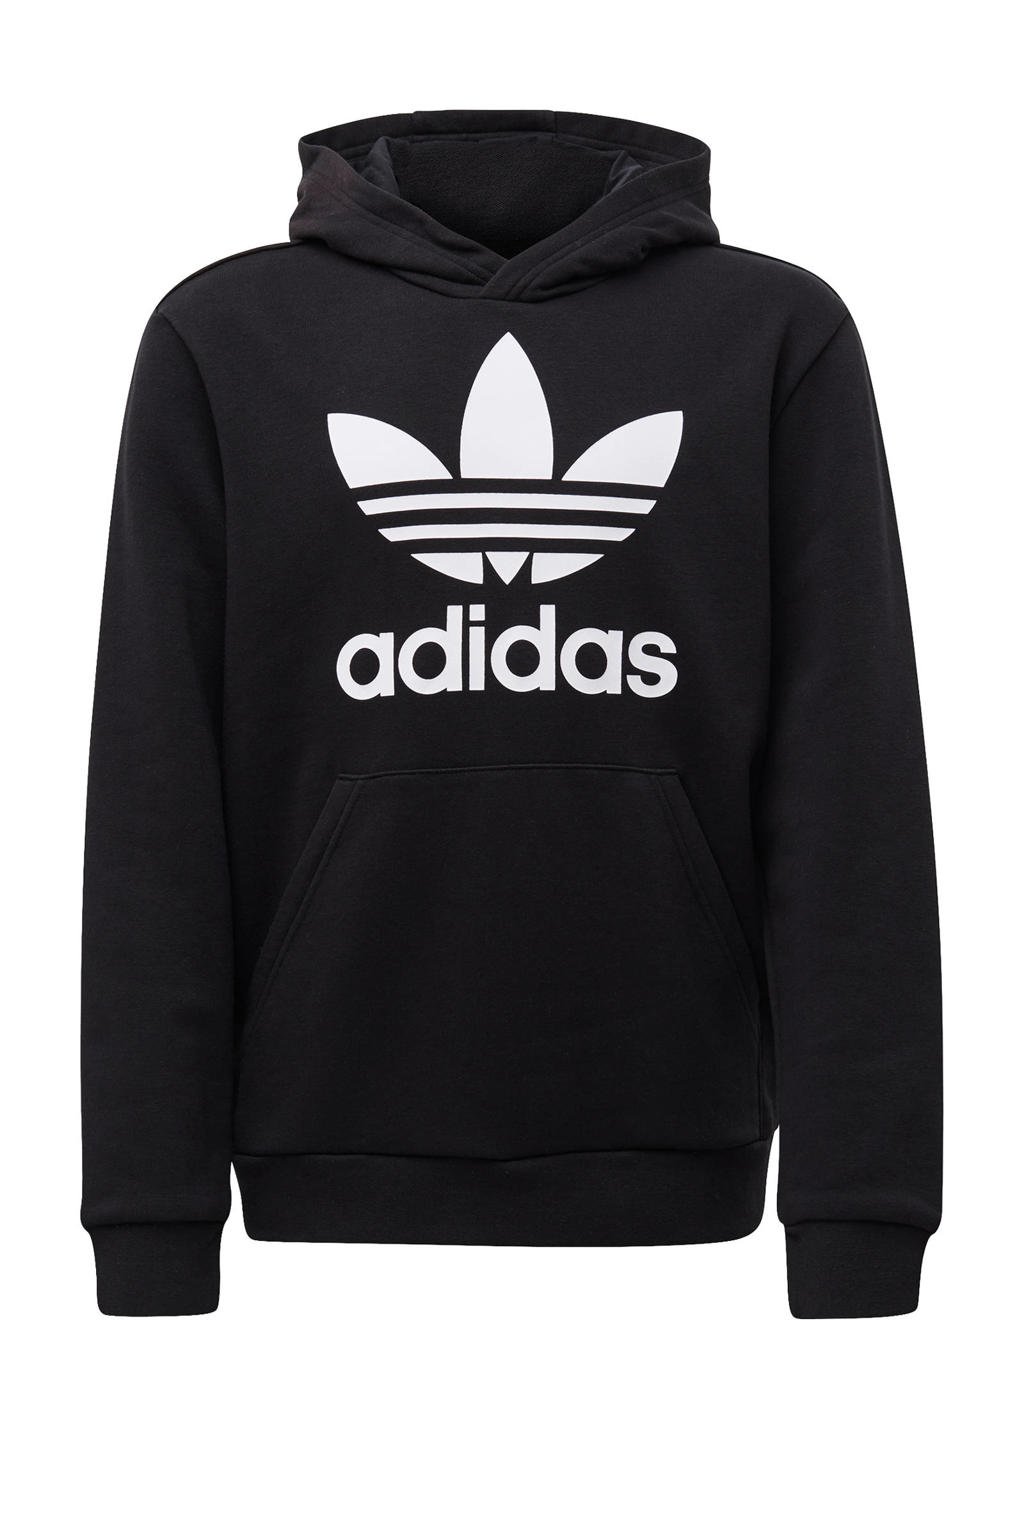 Zwart en witte jongens en meisjes adidas Originals unisex Adicolor hoodie van sweat materiaal met logo dessin, lange mouwen en capuchon